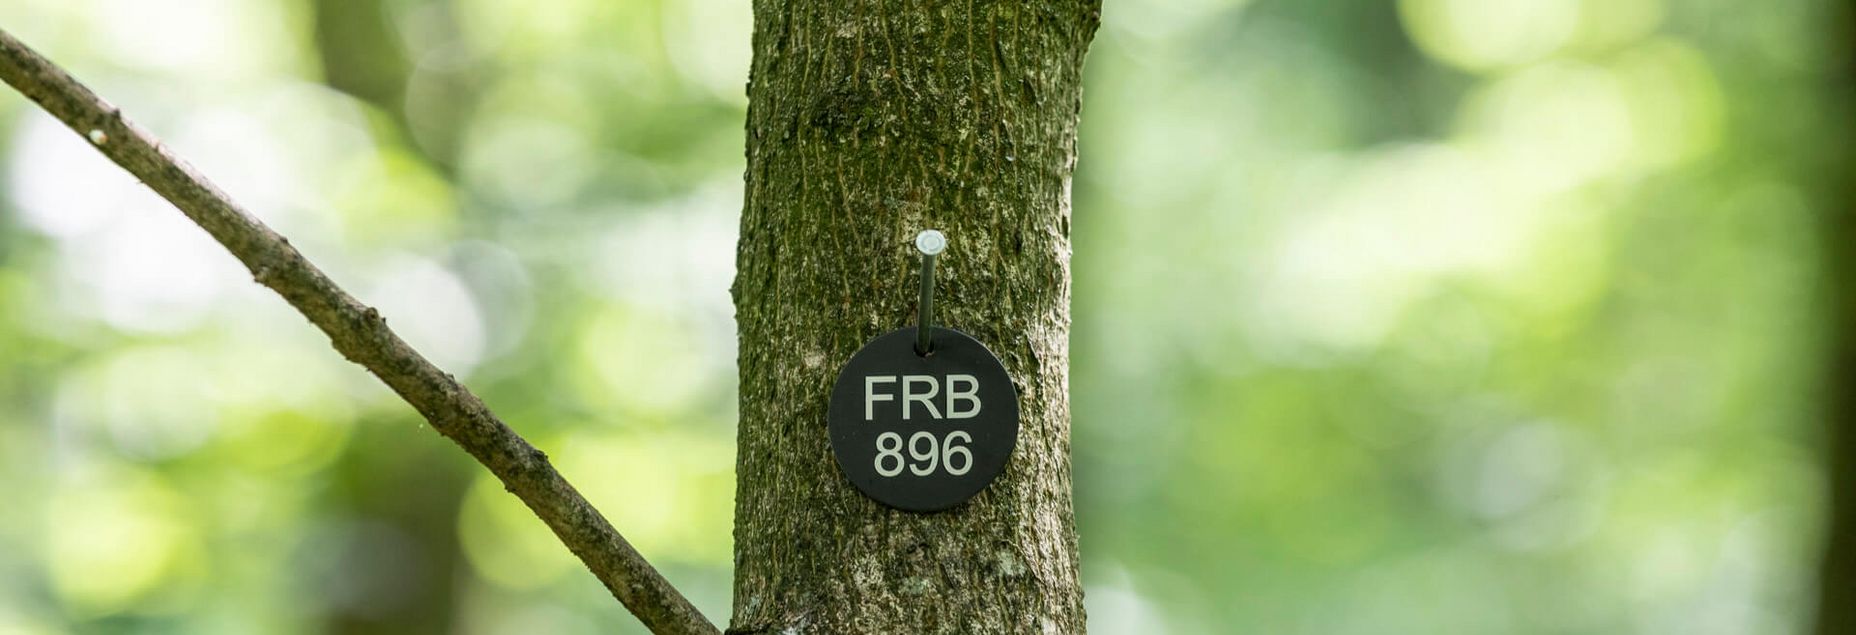 FRB 896 - Plakette